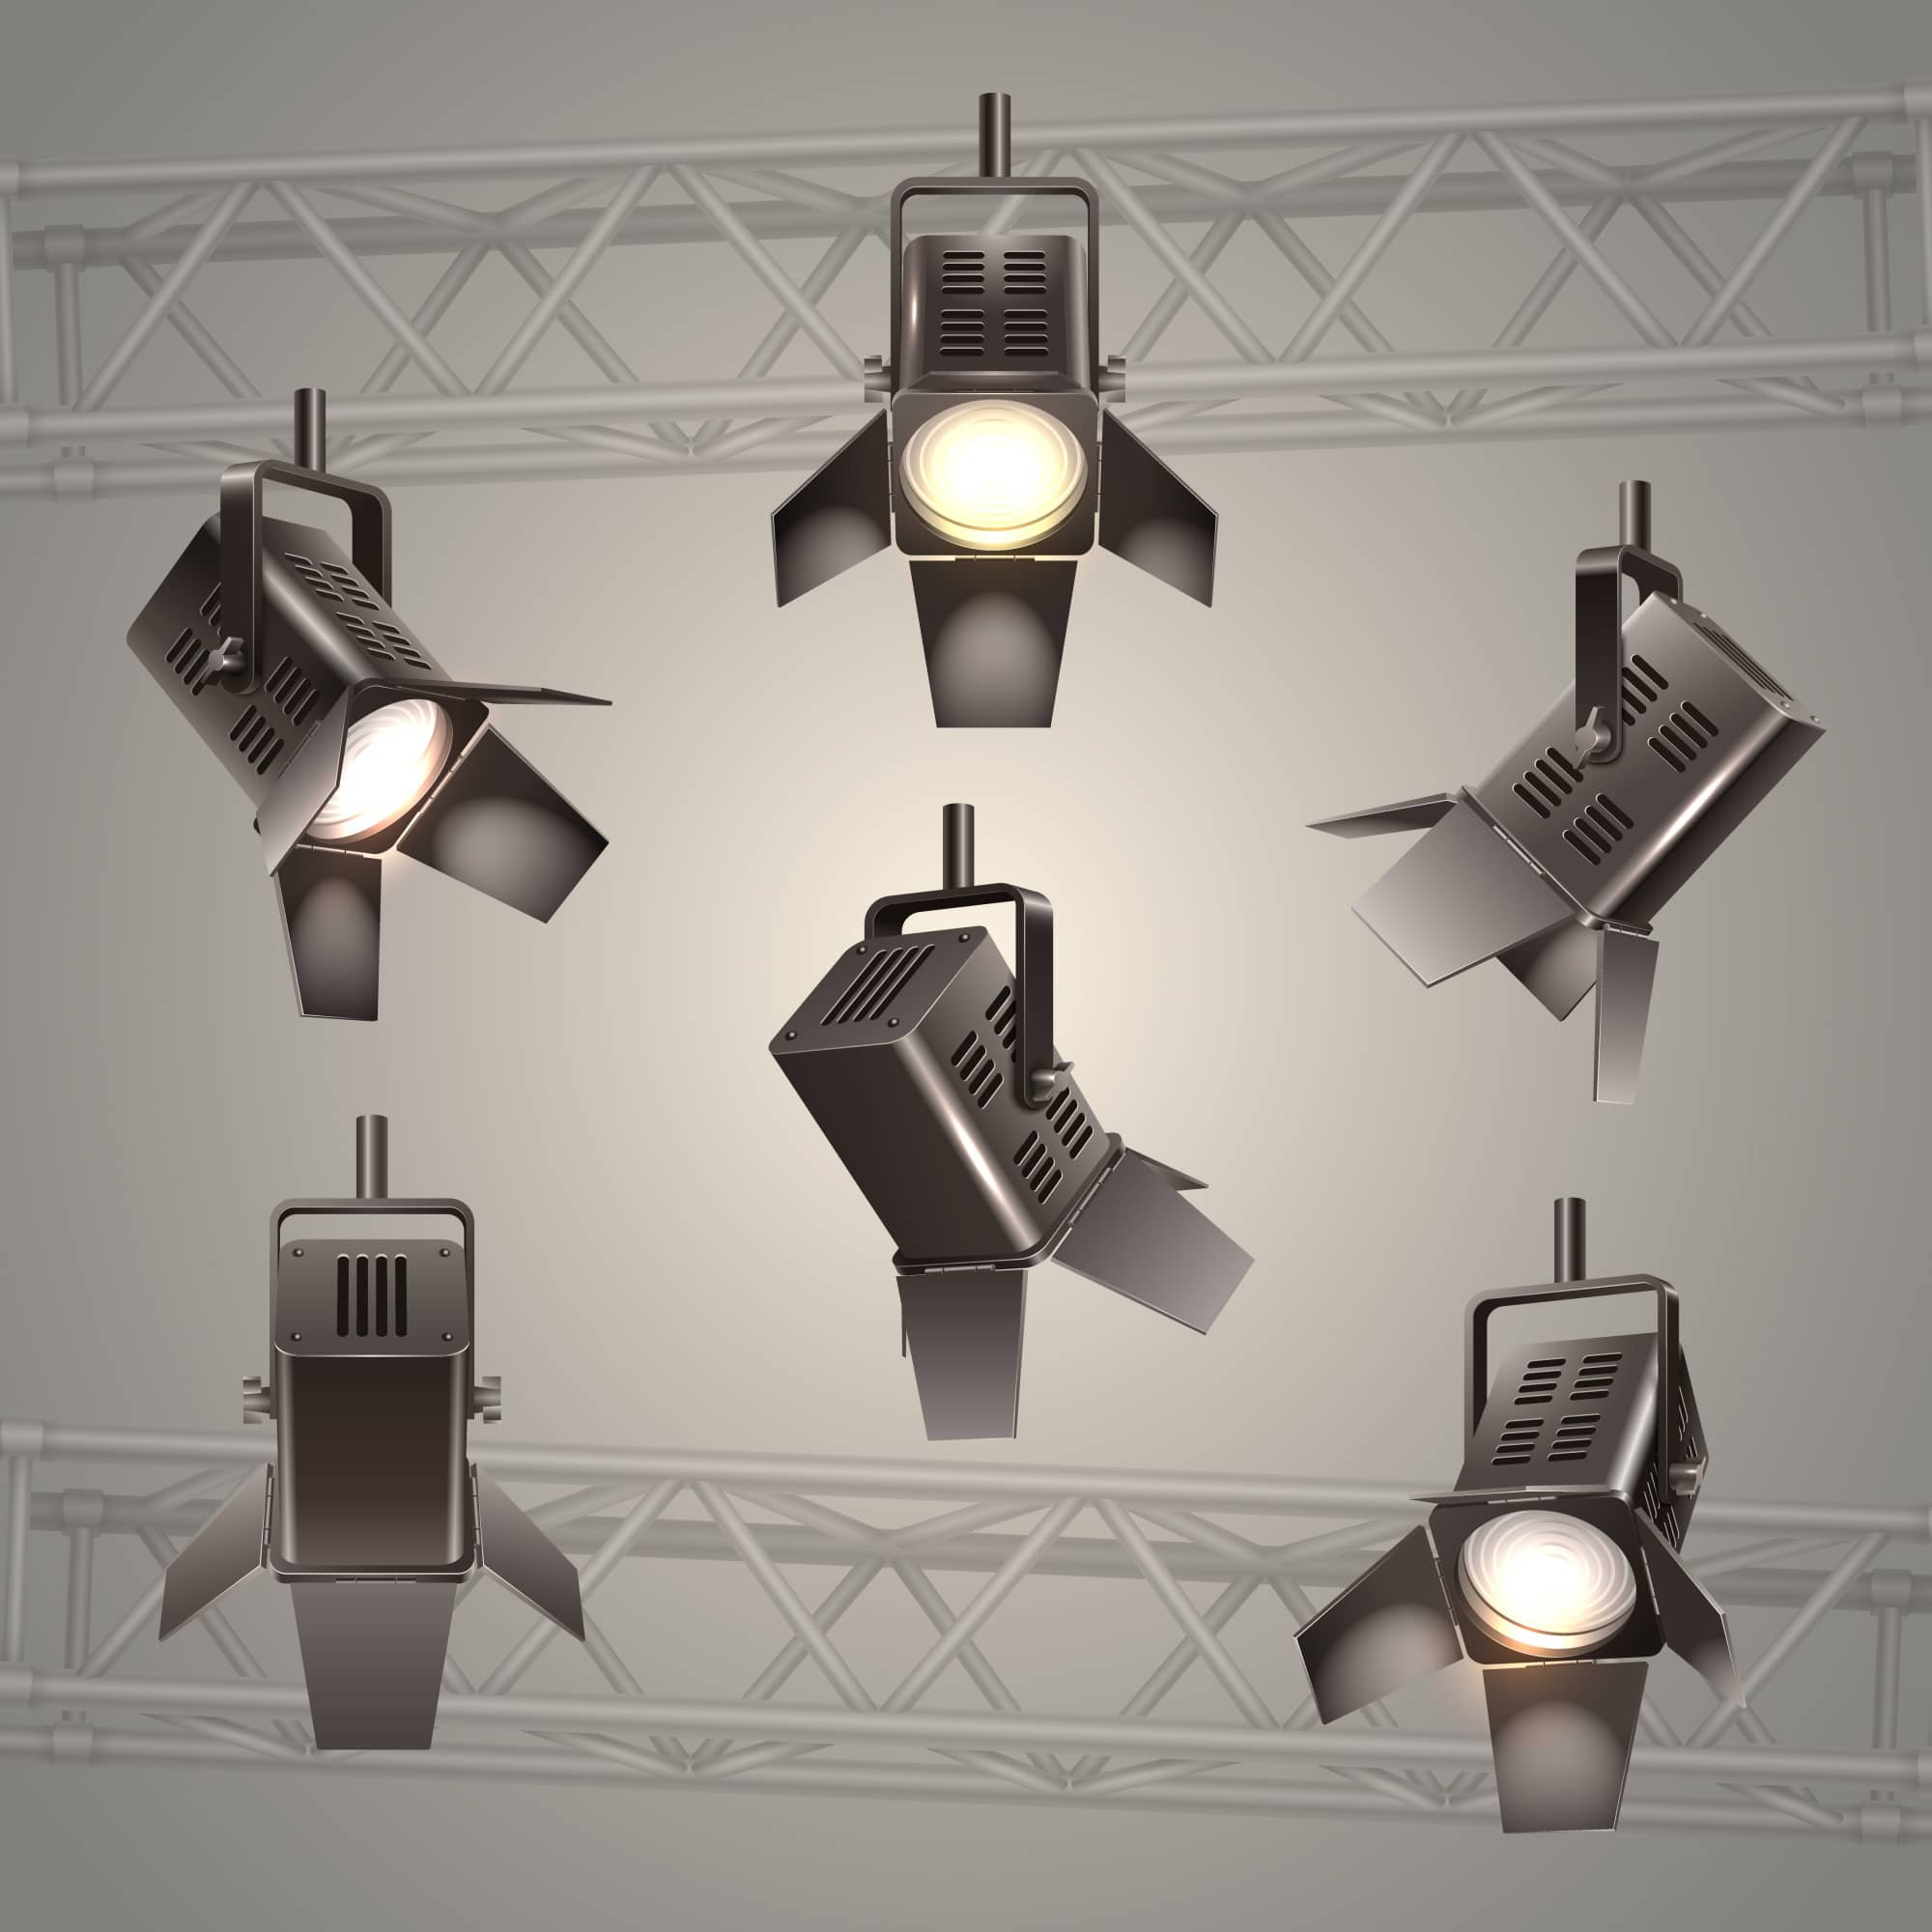 سیستم نورپردازی سالن همایش و کنفرانس در طراحی سالن ها